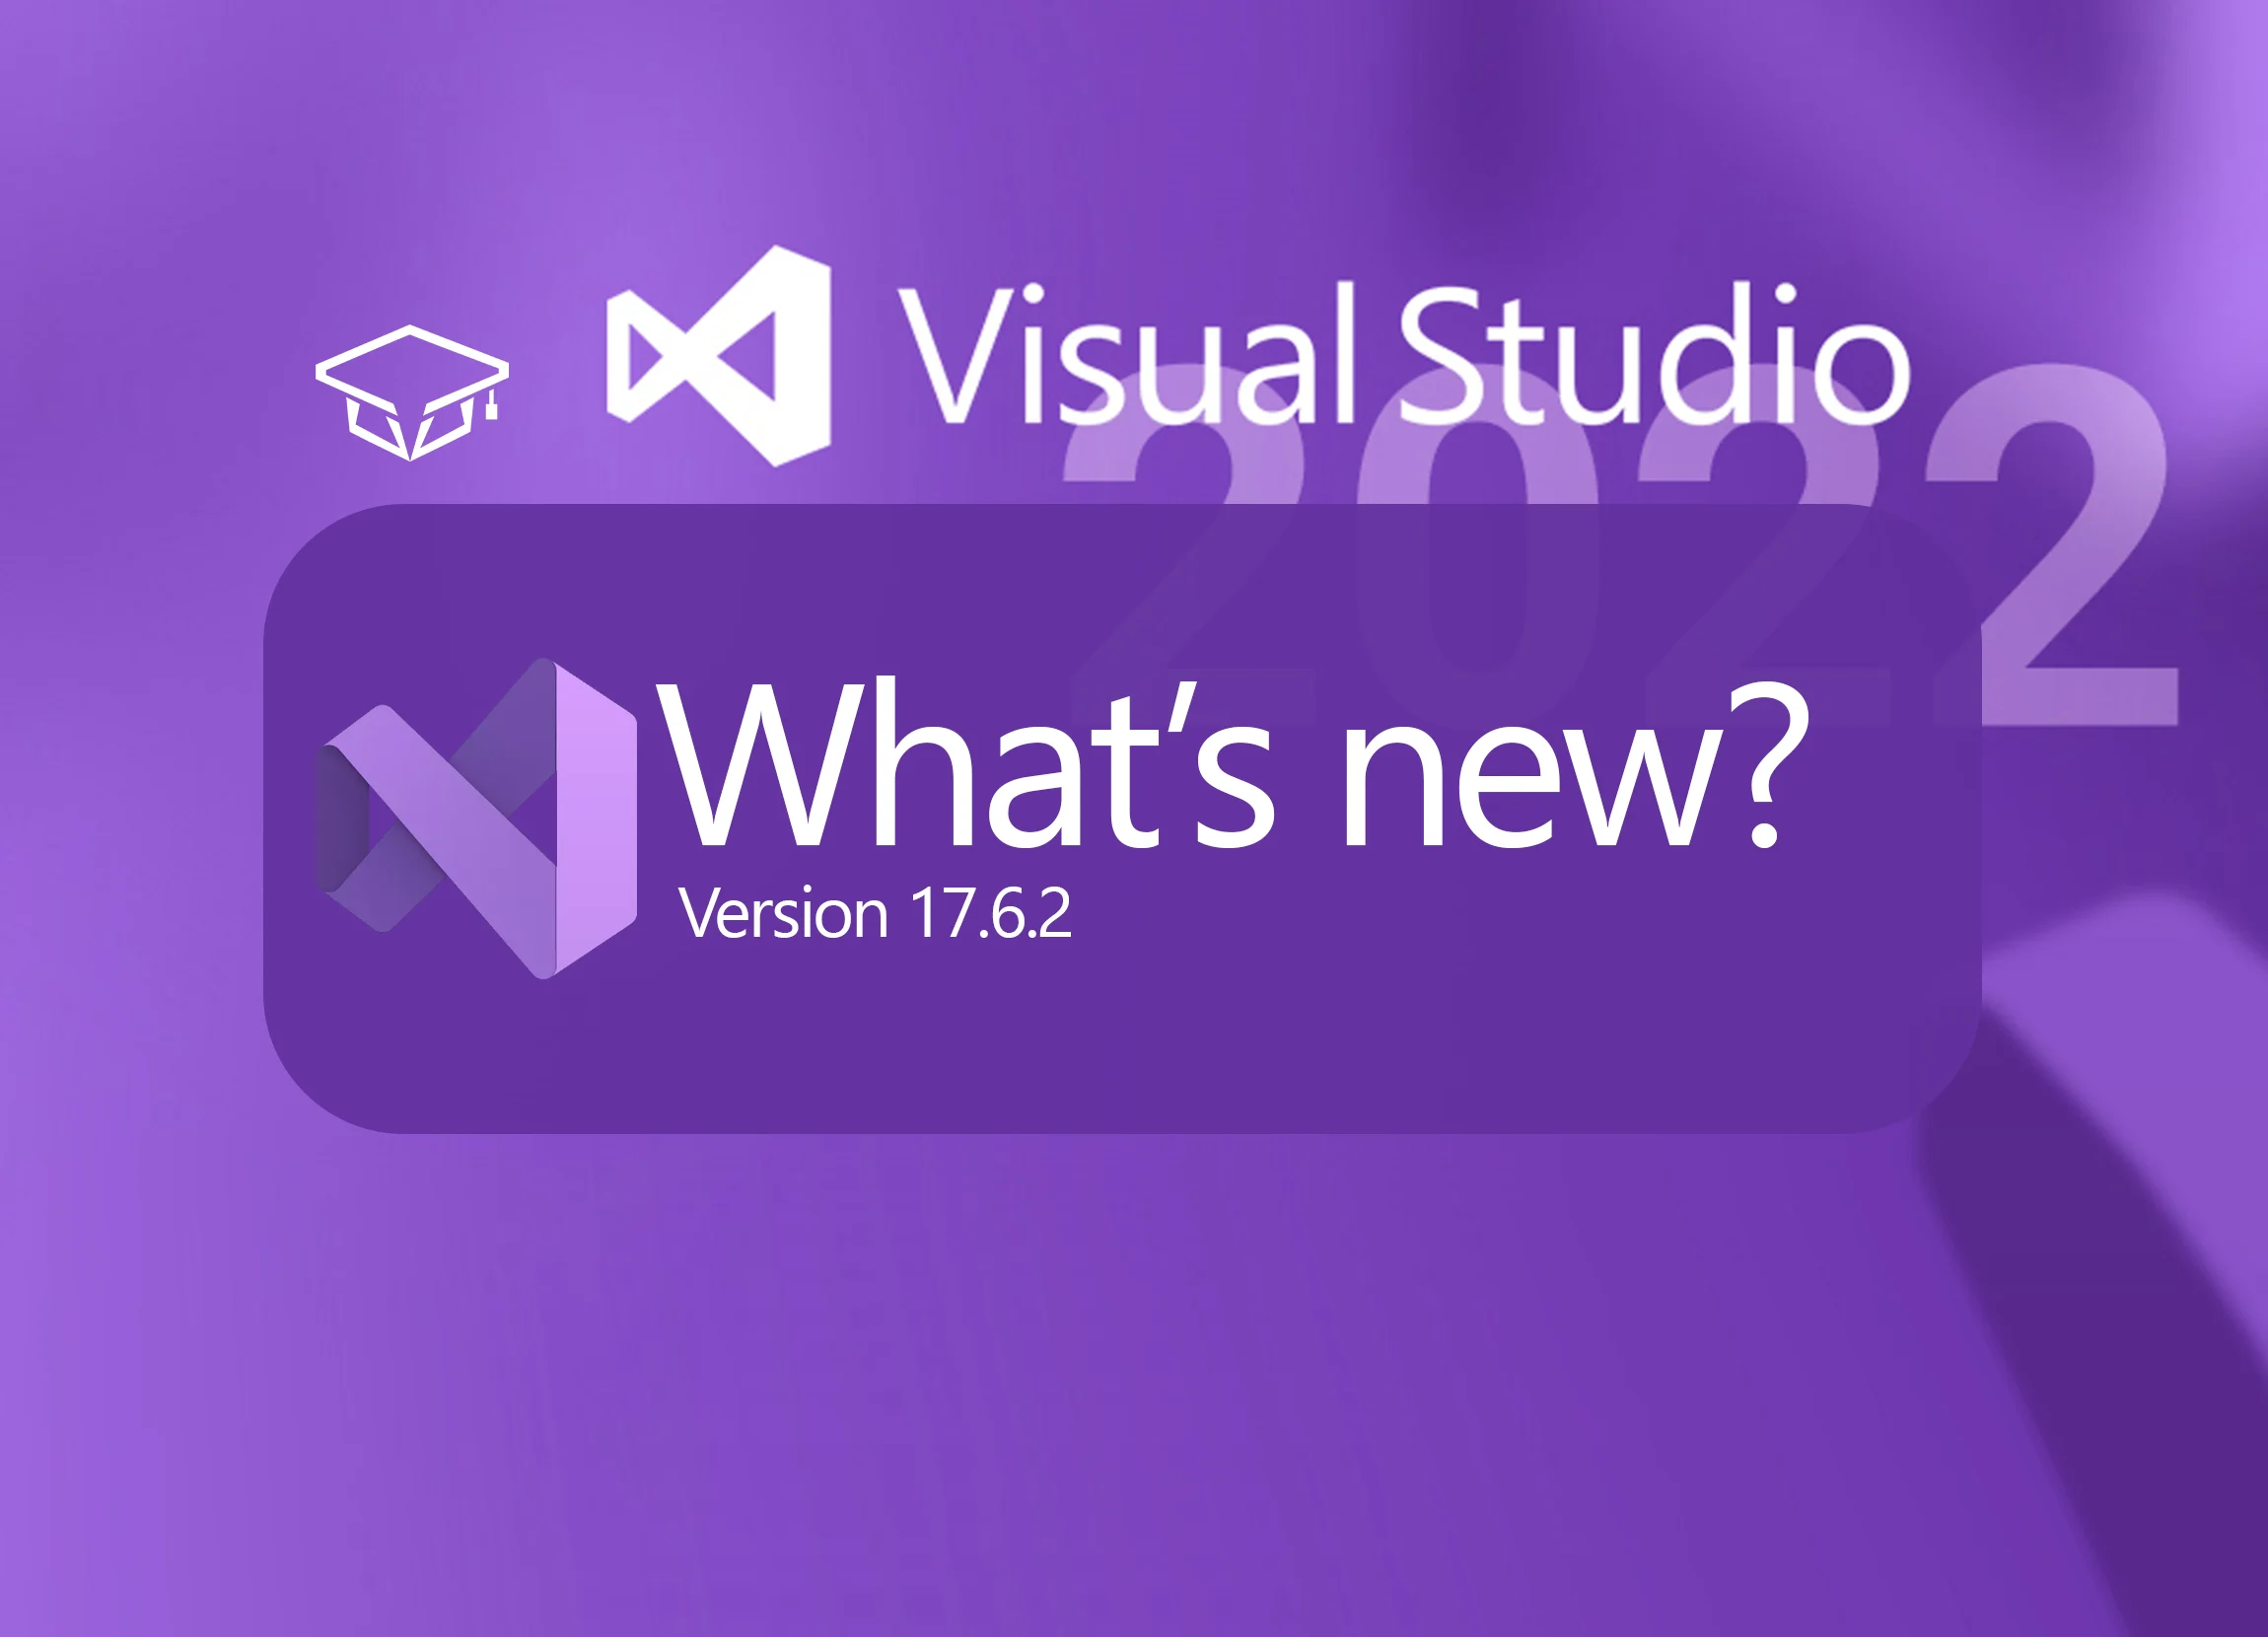 ویژگی های جدید نسخه 17.6.2 ویژوال استودیو 2022